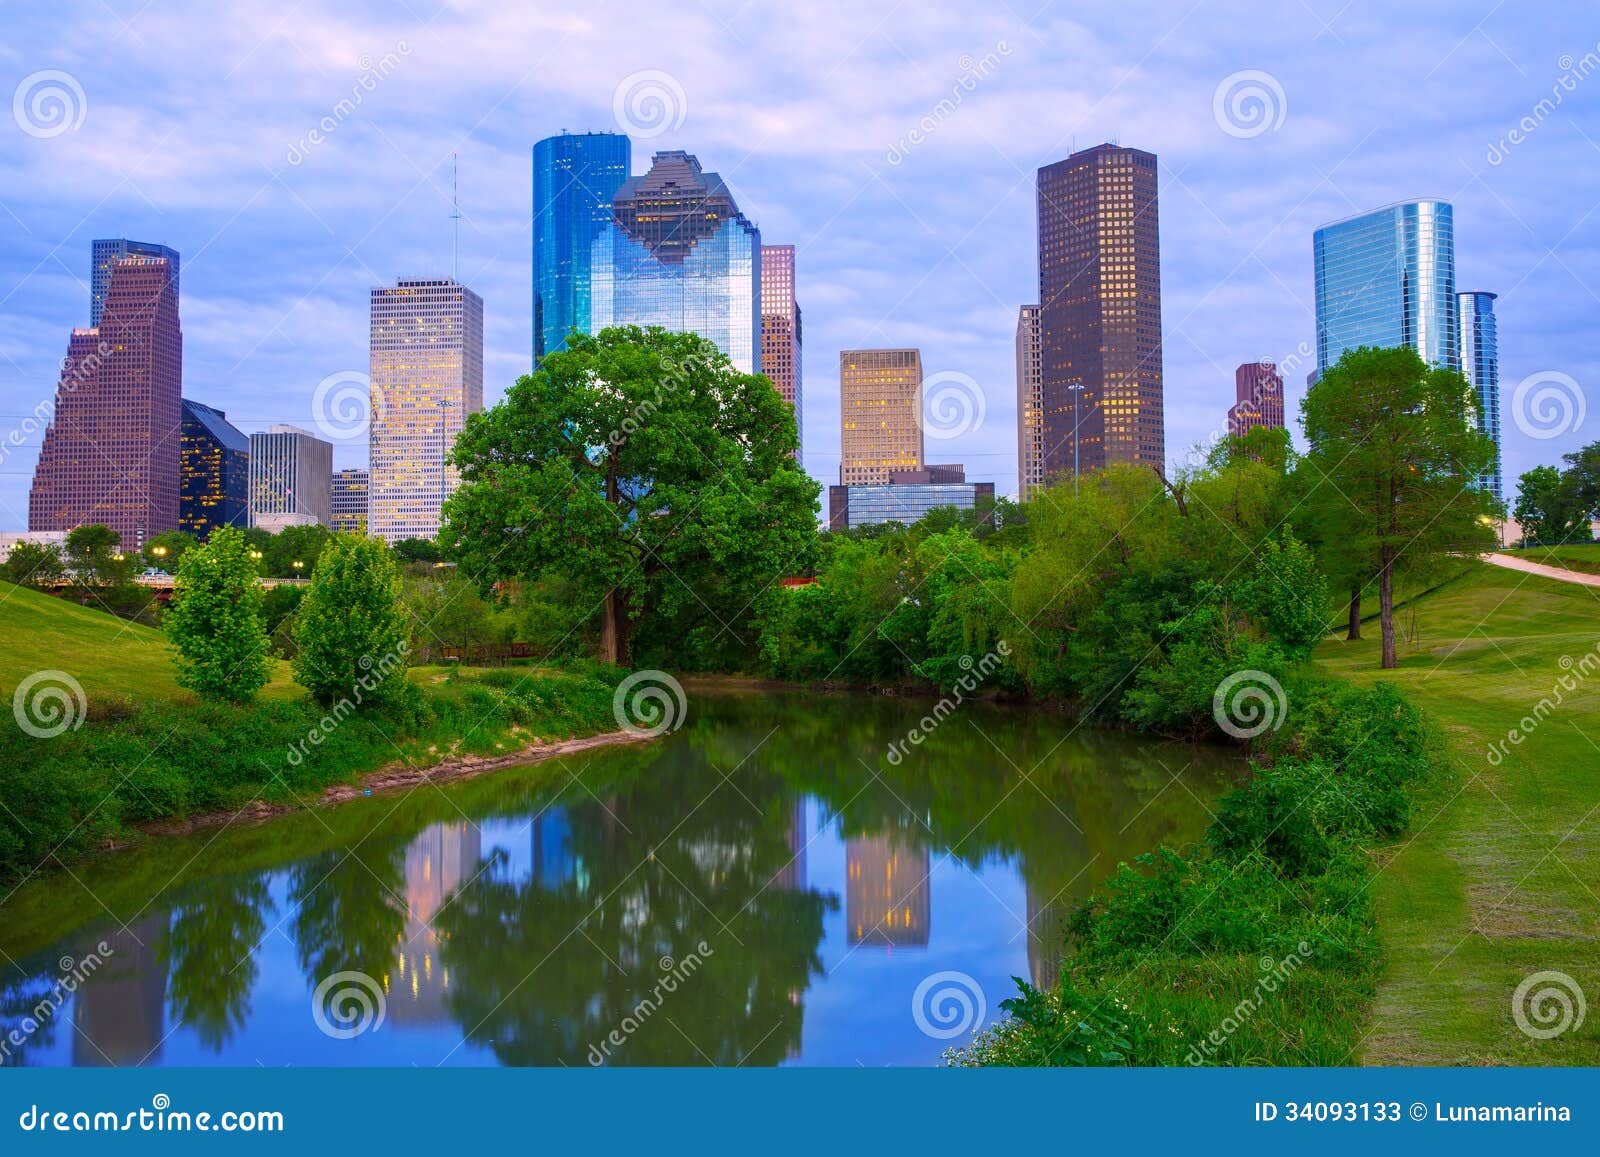 houston texas modern skyline from park river